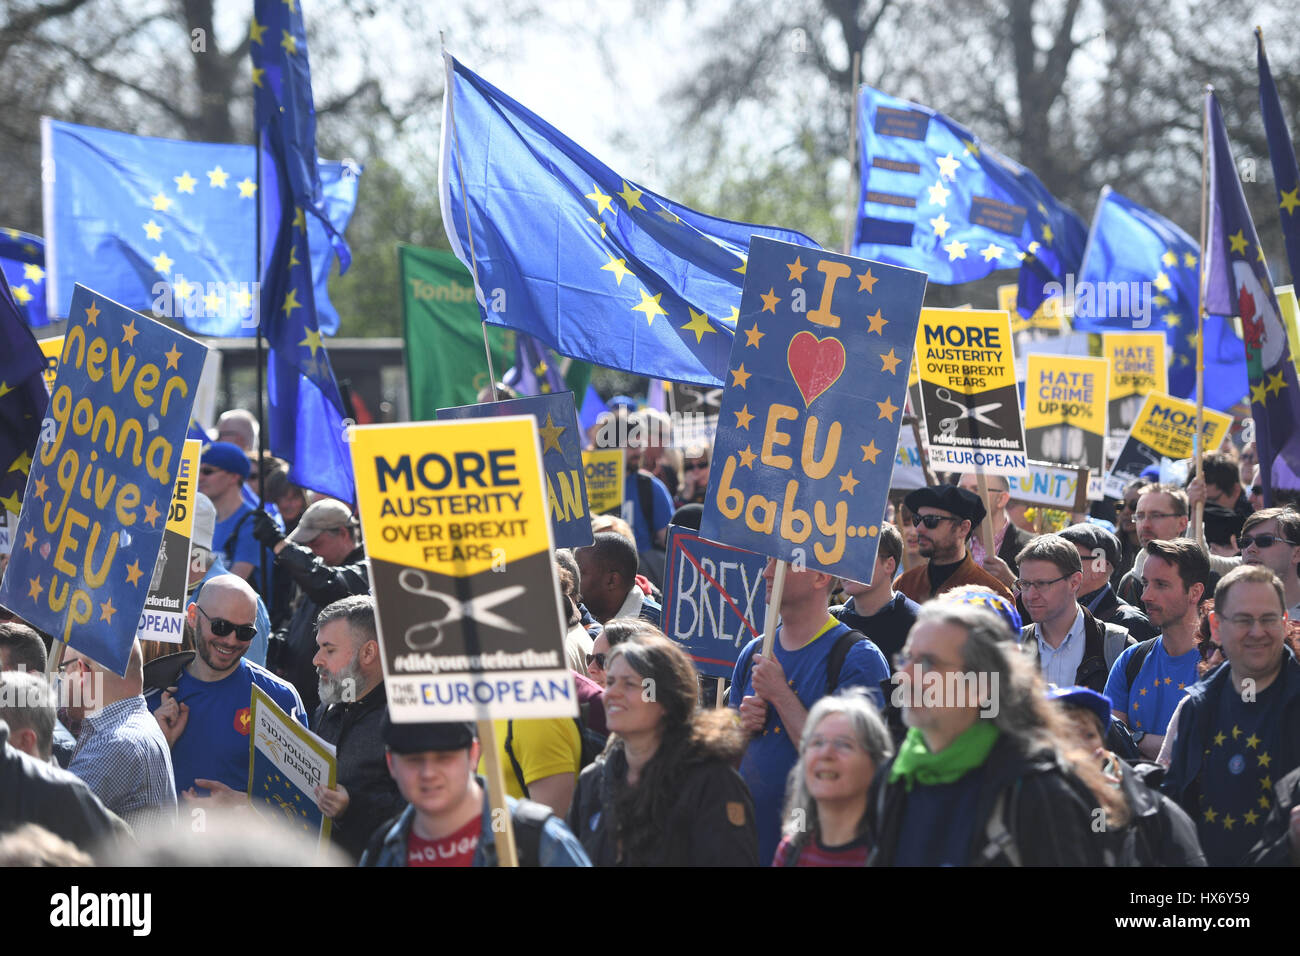 Los manifestantes a favor de la UE toman parte en una marcha por Europa contra Brexit rally en el centro de Londres. Foto de stock